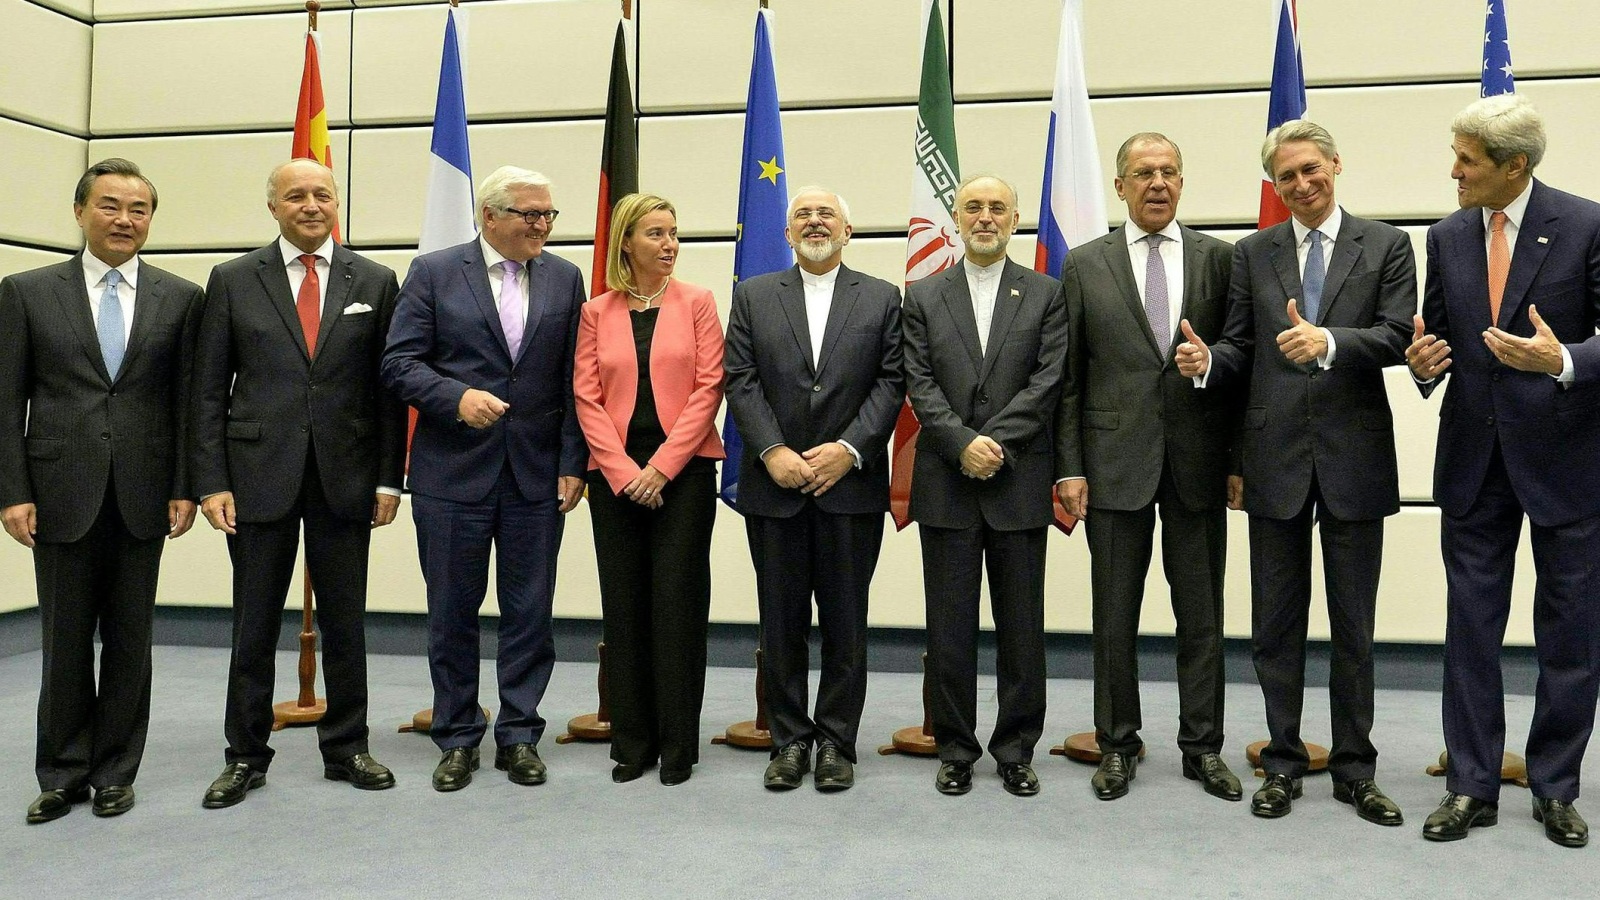 ‪القوى الكبرى تمكنت من إبرام الاتفاق النووي مع إيران في فيينا في 14 يوليو/تموز 2015 بعد جهود مضنية لسنوات (‬ الأوروبية)